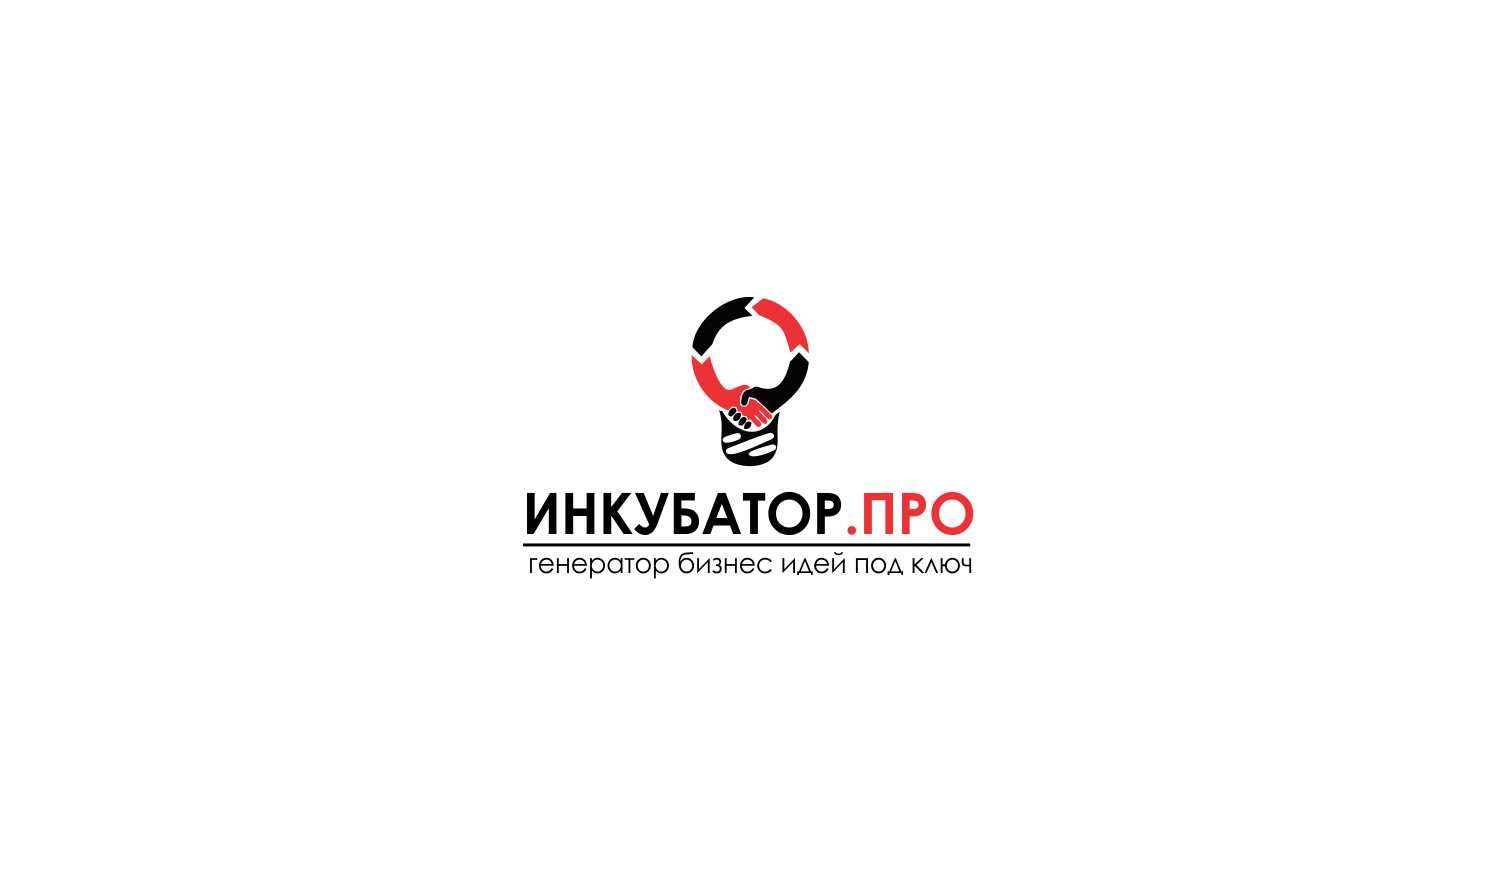 Логотип для инкубатор.про - дизайнер WebEkaterinA